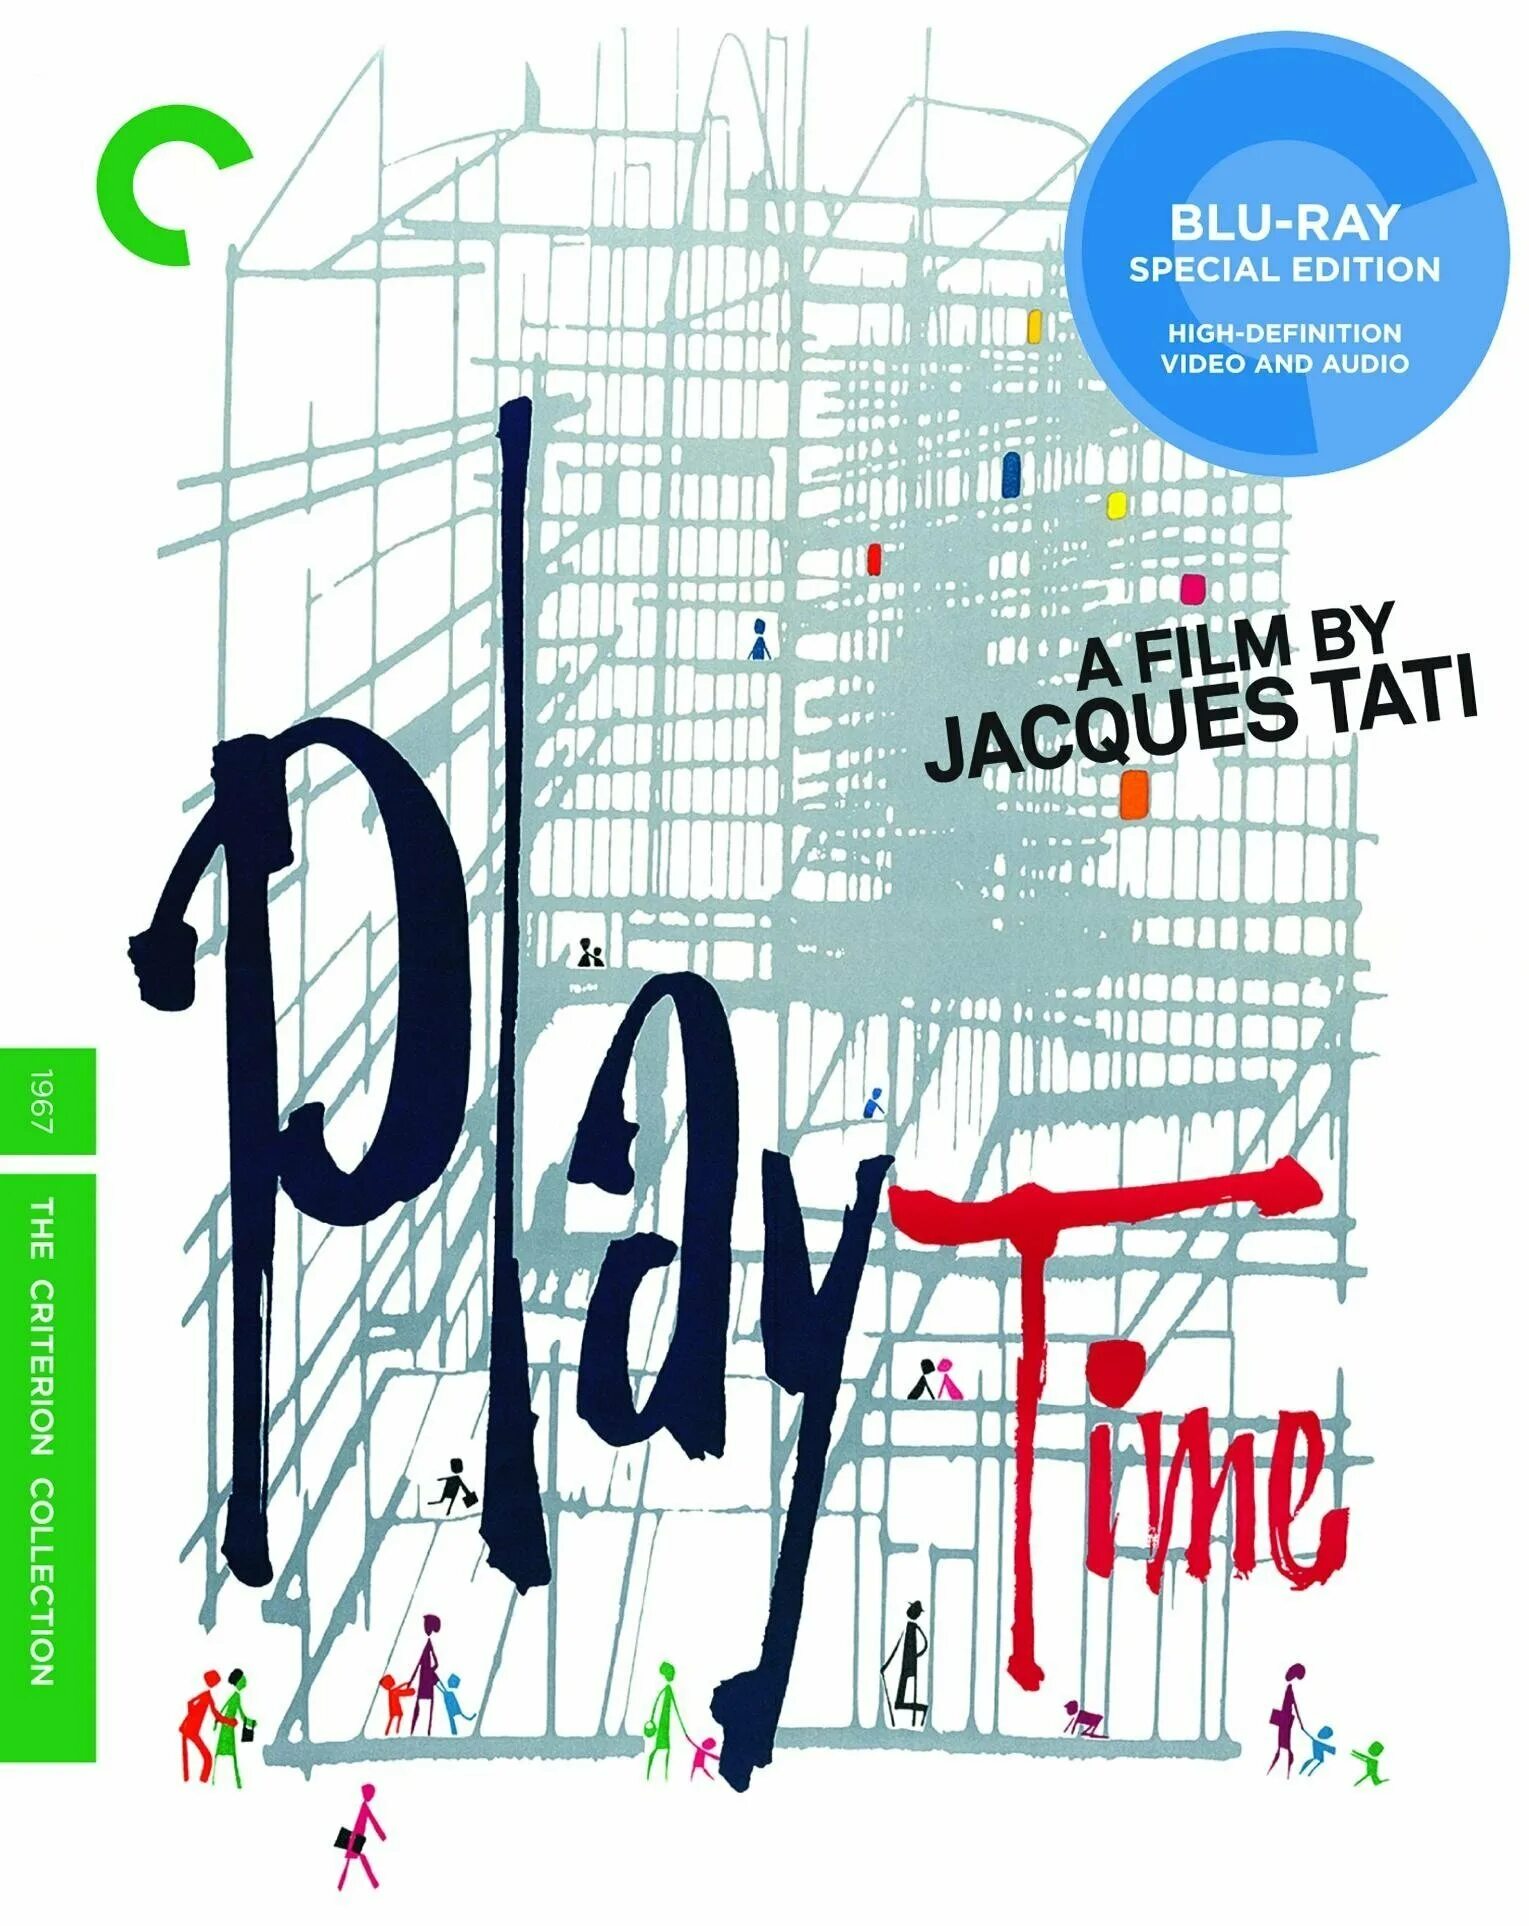 Время развлечений. Playtime 1967. Время развлечений (1967) Постер Жак Тати.